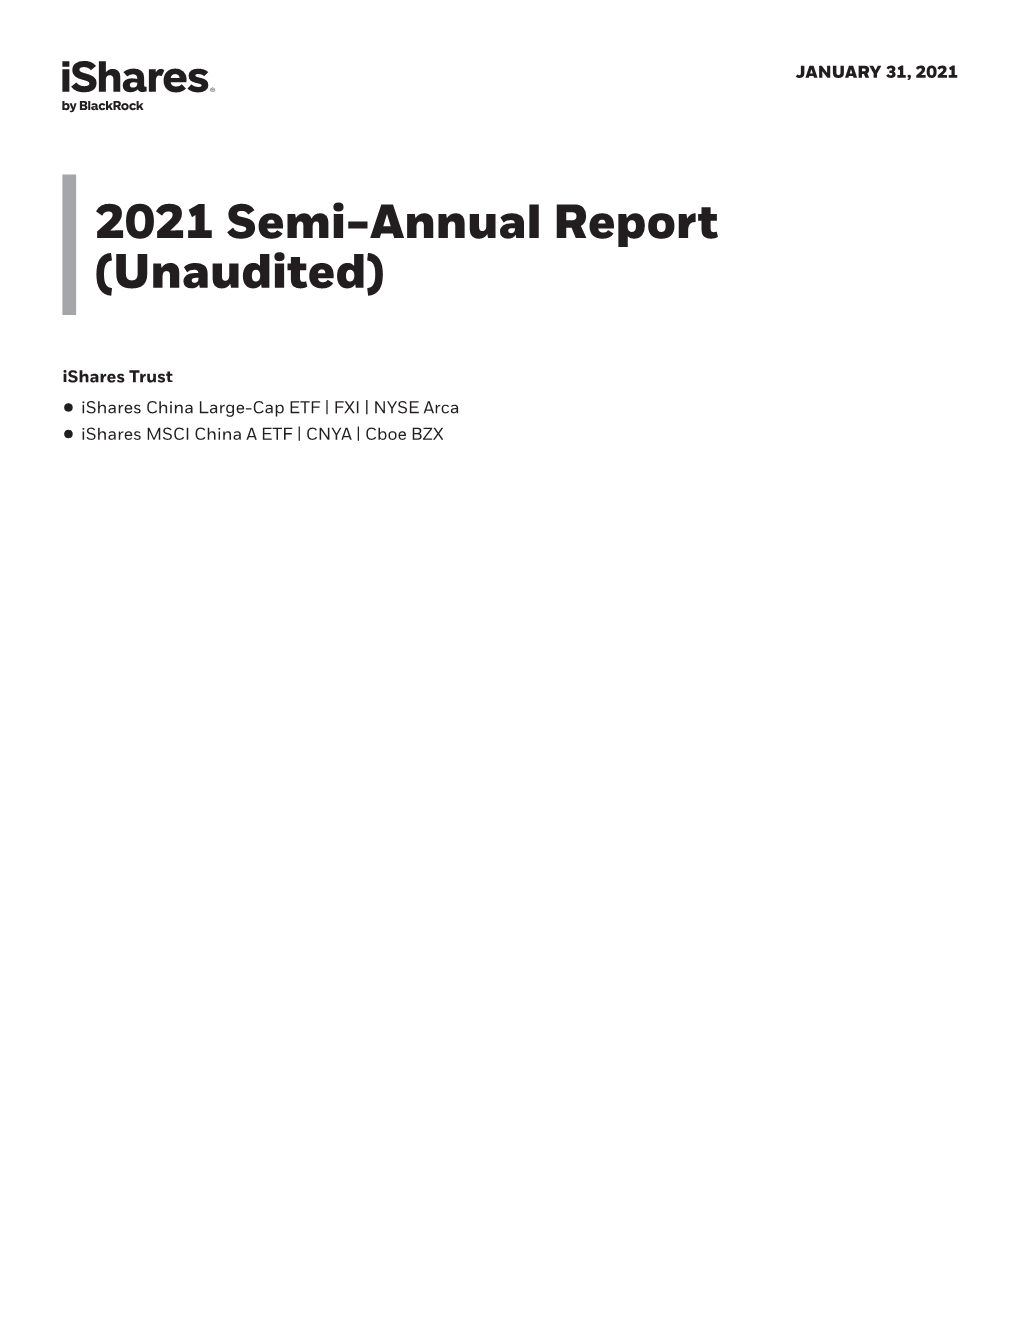 2021 Semi-Annual Report (Unaudited)